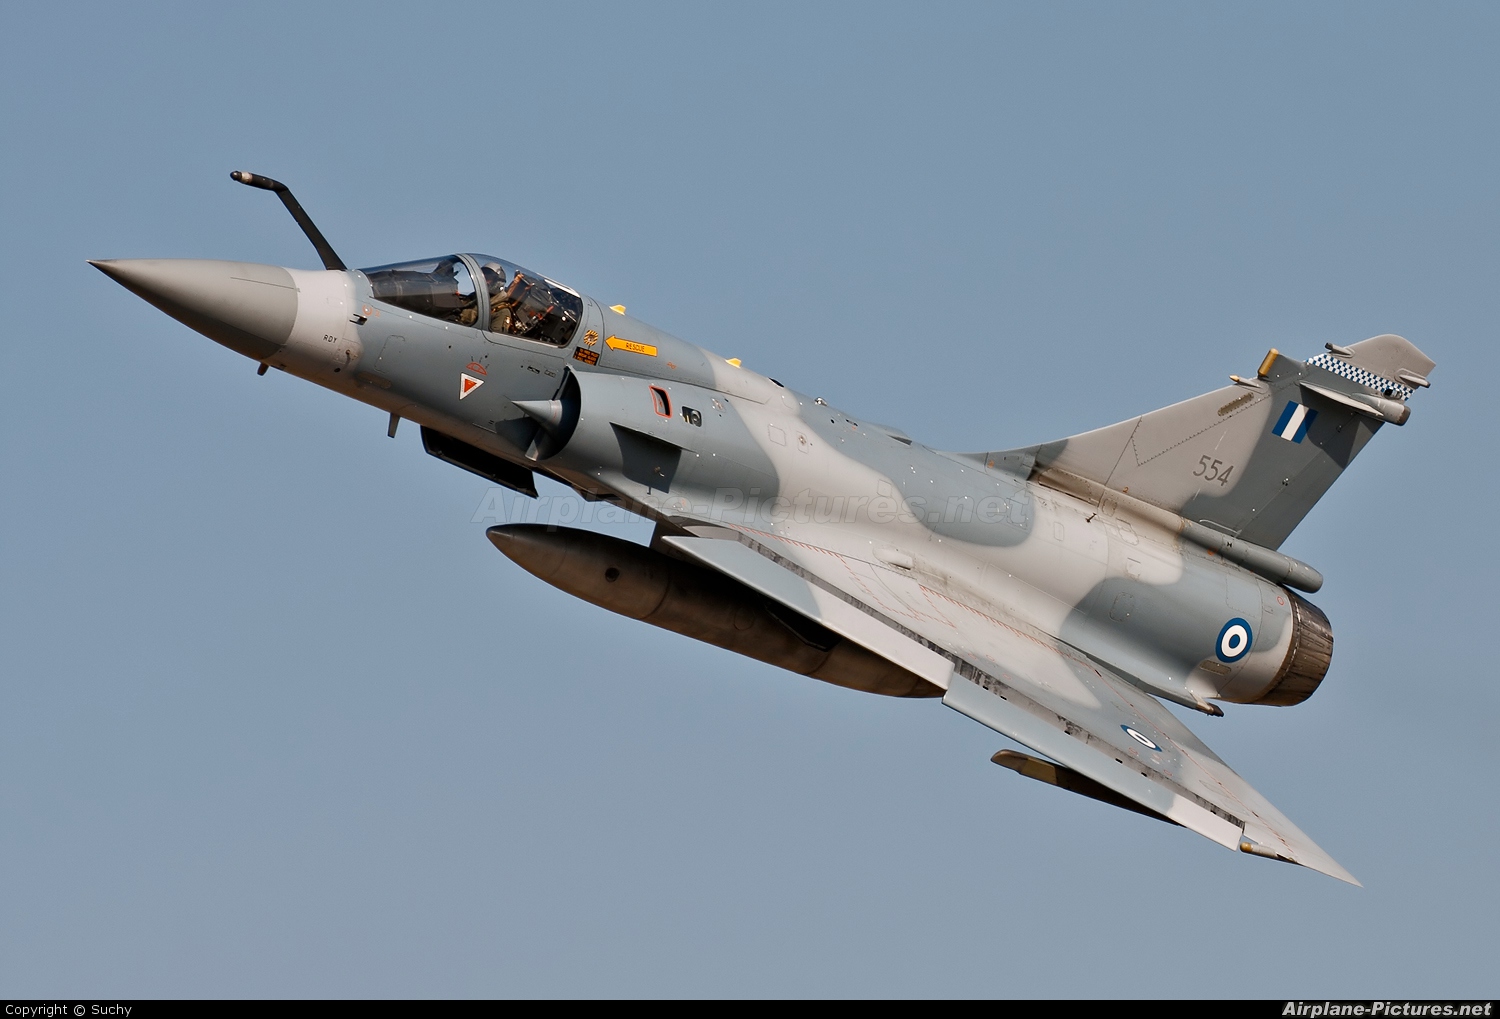 Nice Images Collection: Dassault Mirage 2000 Desktop Wallpapers